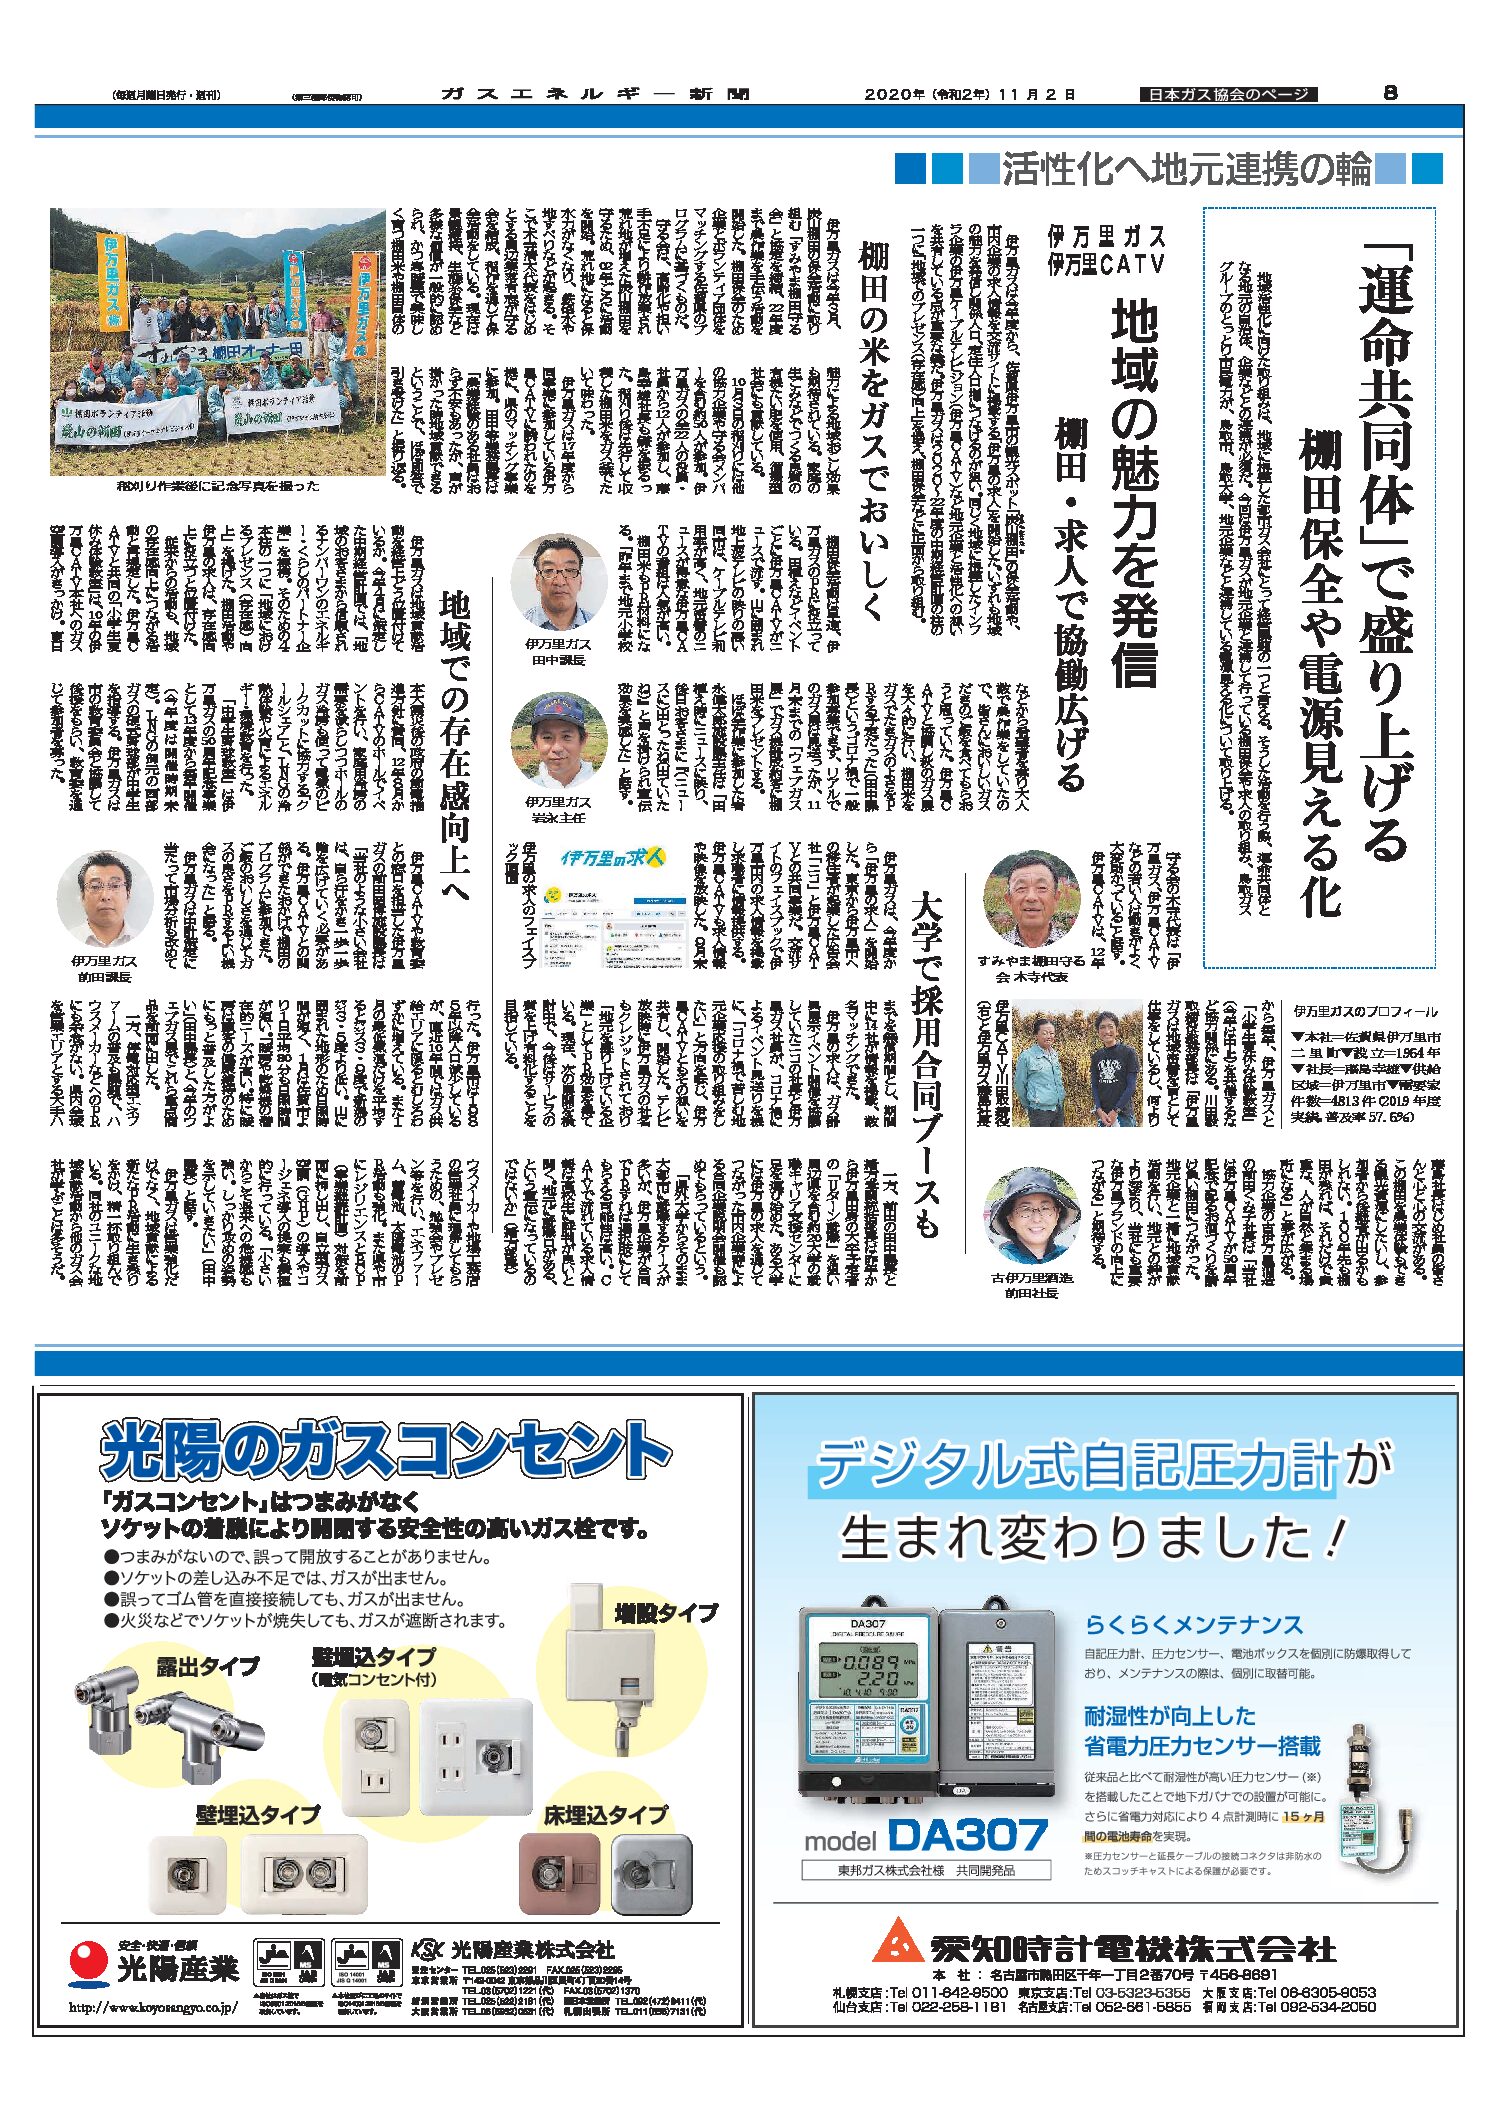 【日本ガス協会のページ】活性化へ地元連携の輪/(事例1)伊万里ガス、伊万里CATV